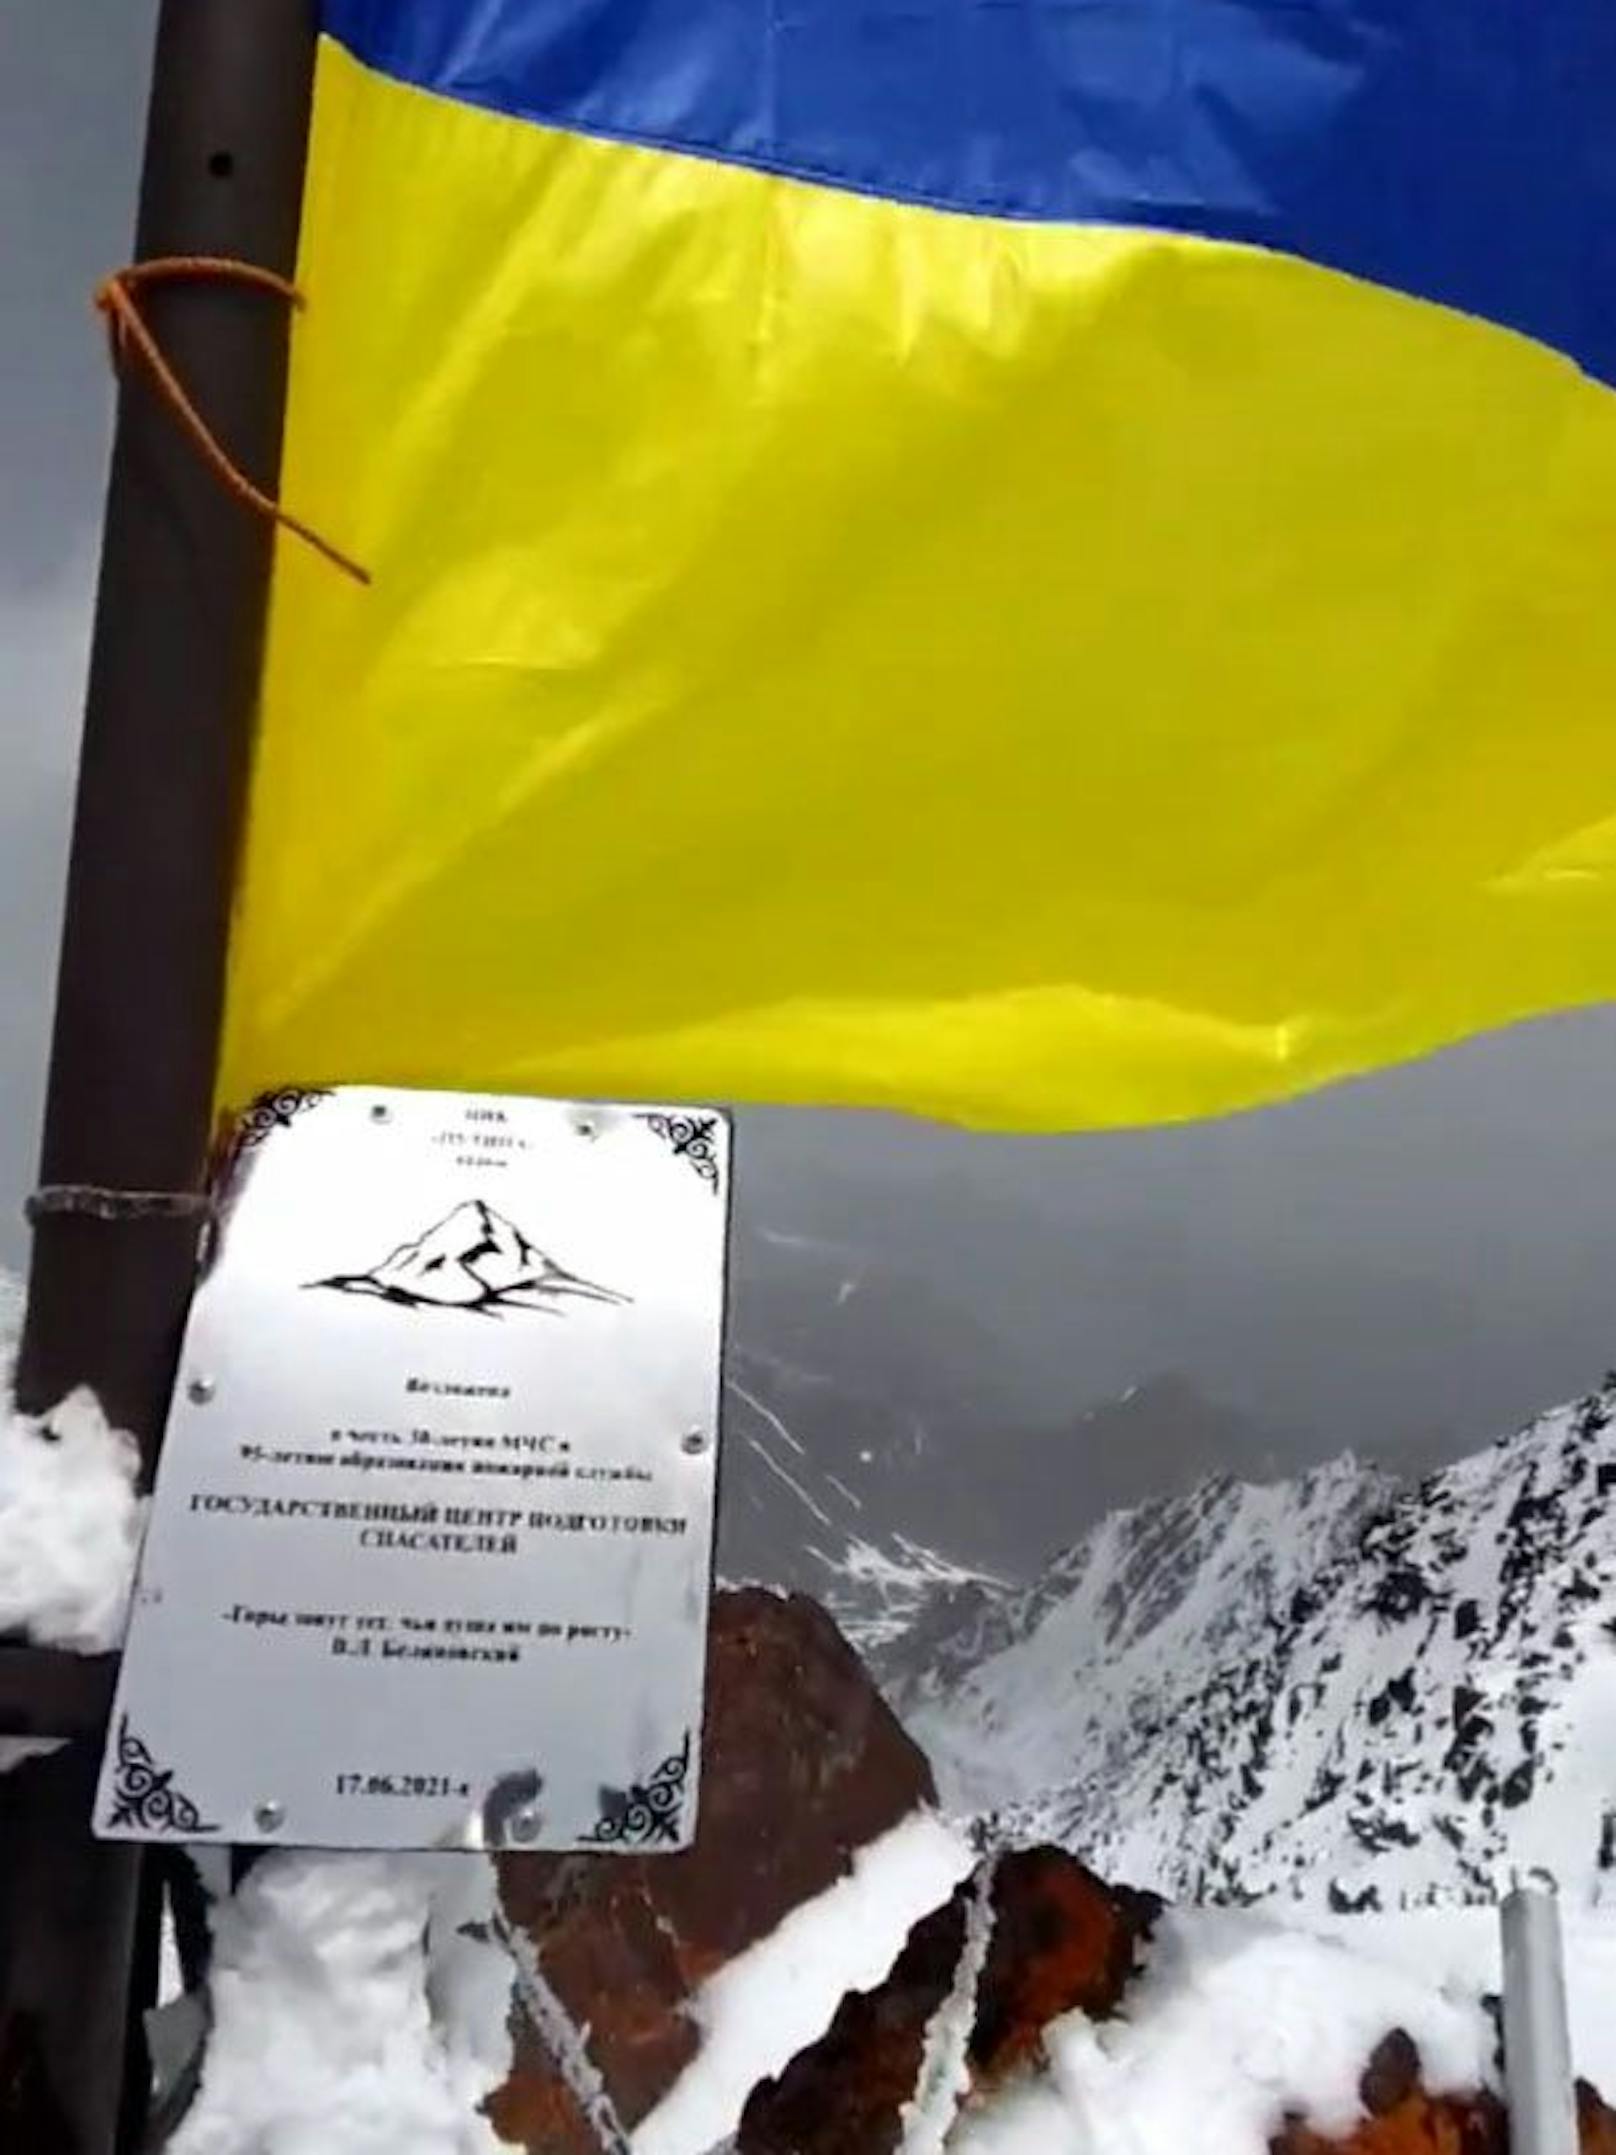 Nun haben unbekannte Kriegsgegner ausgerechnet dort eine ukrainische Fahne gehisst. <a target="_blank" data-li-document-ref="100208957" href="https://www.heute.at/g/putin-verhoehnt-auf-seinem-berg-weht-nun-ukraine-fahne-100208957">Alle Infos HIER &gt;&gt;</a>